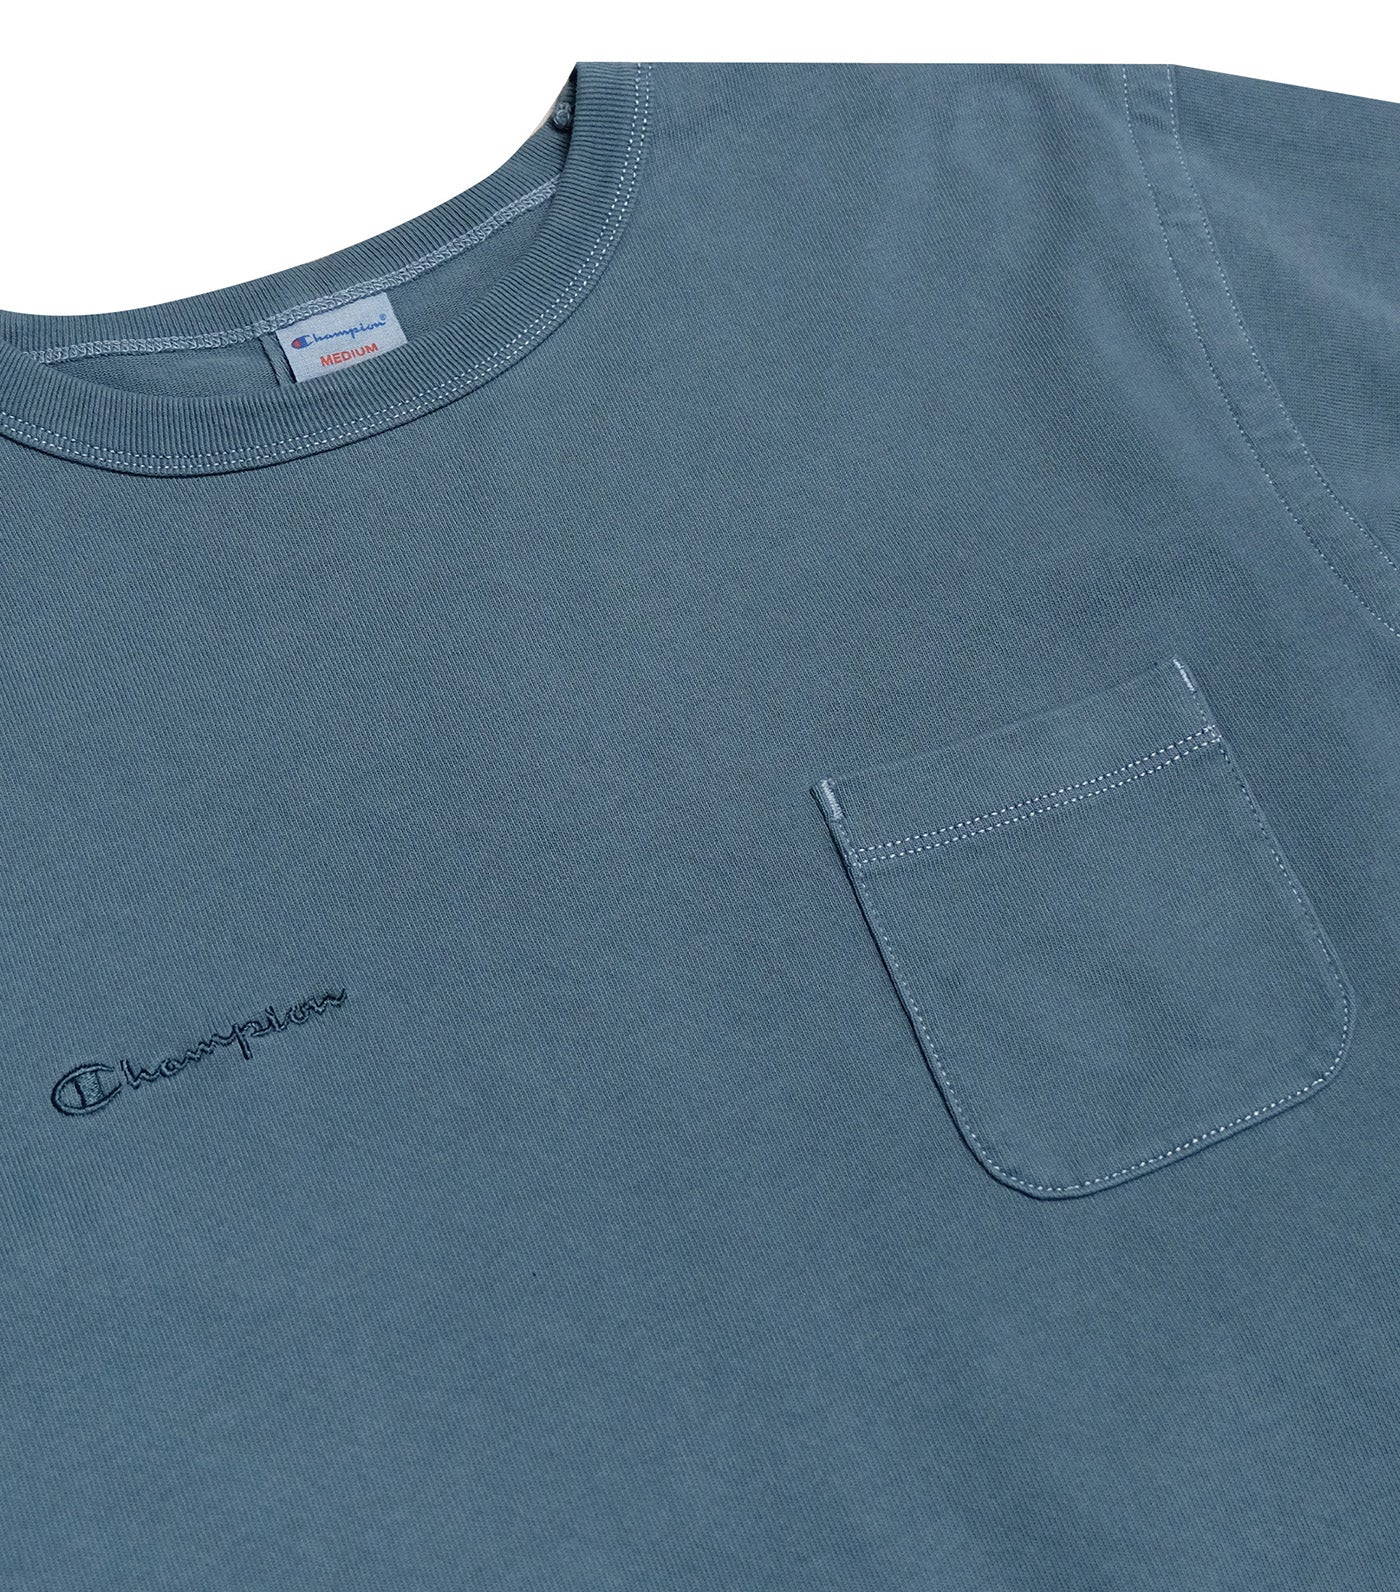 Japan Line Short Sleeve Pocket T-Shirt Teal Blue